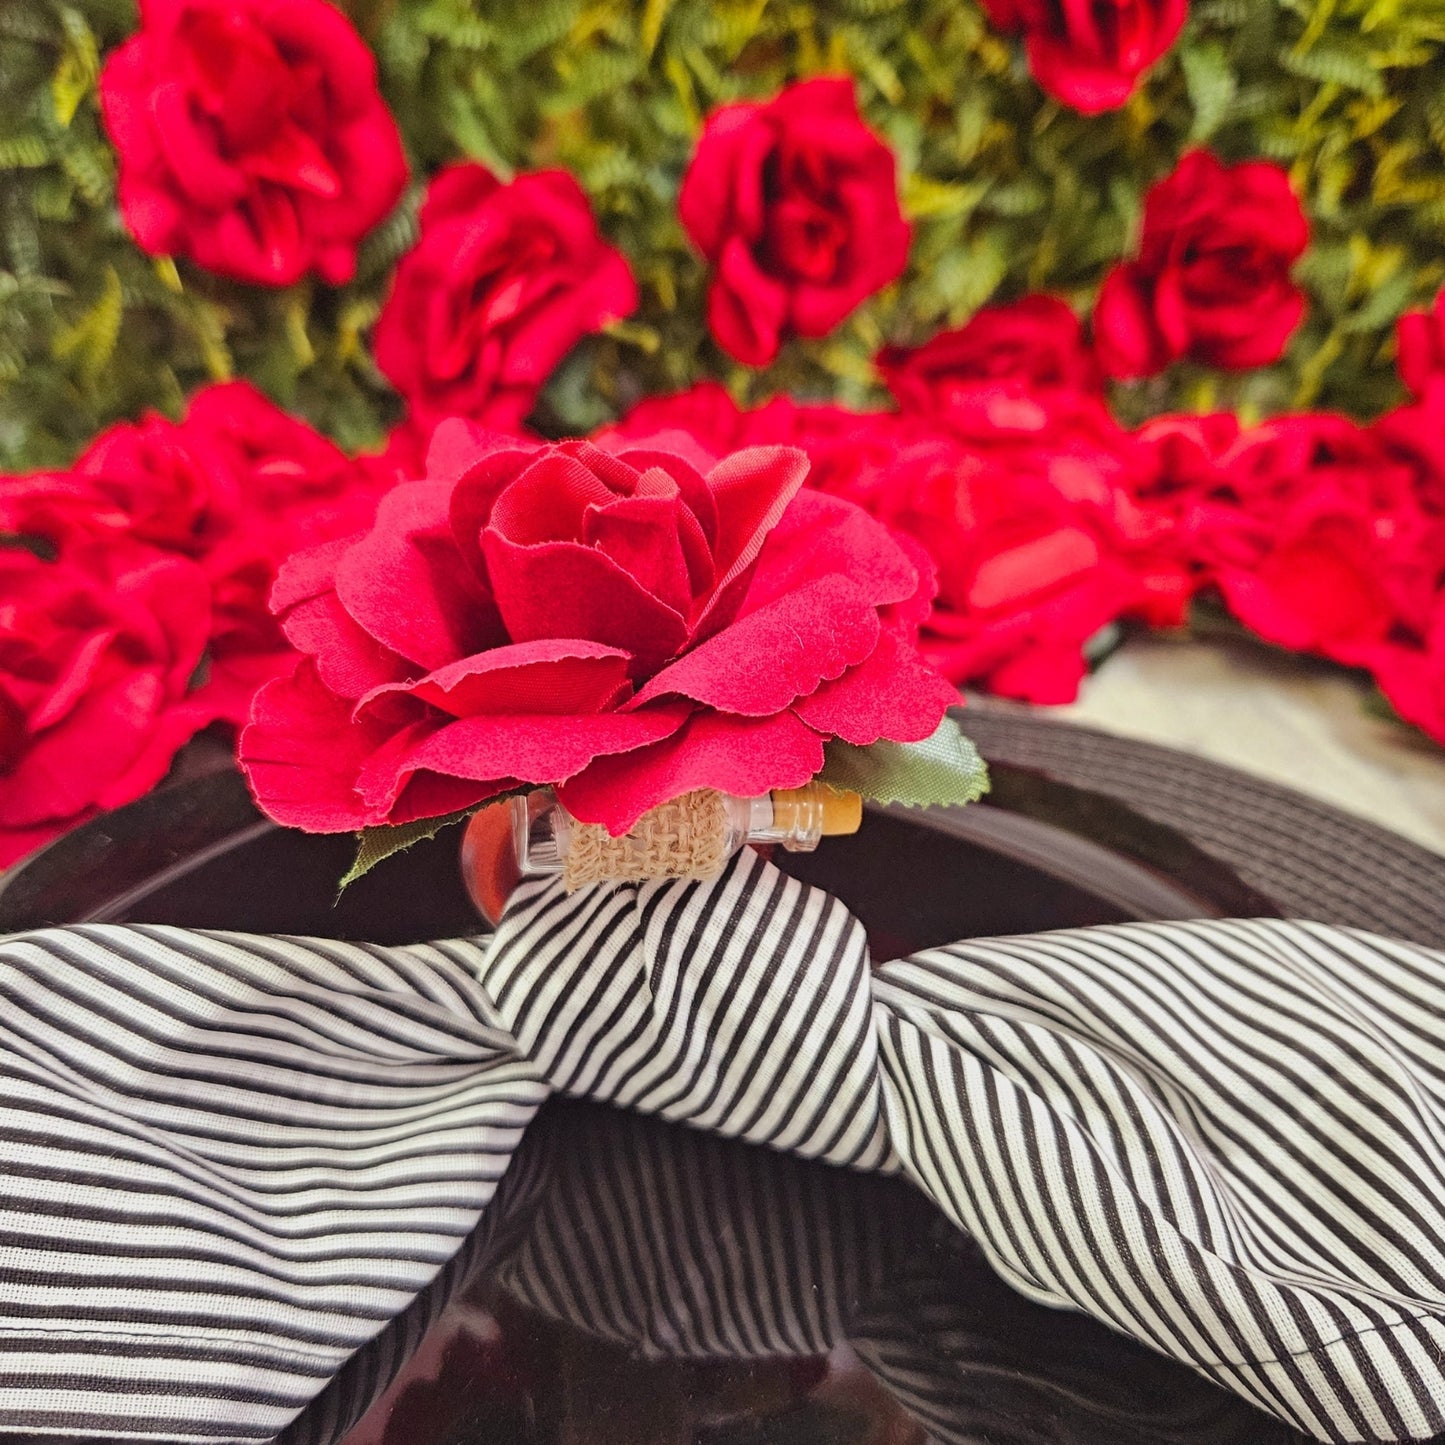 Charlo's Heart's Secrets Napkin Rings Red Colombiana Romantic Flower Rosebud